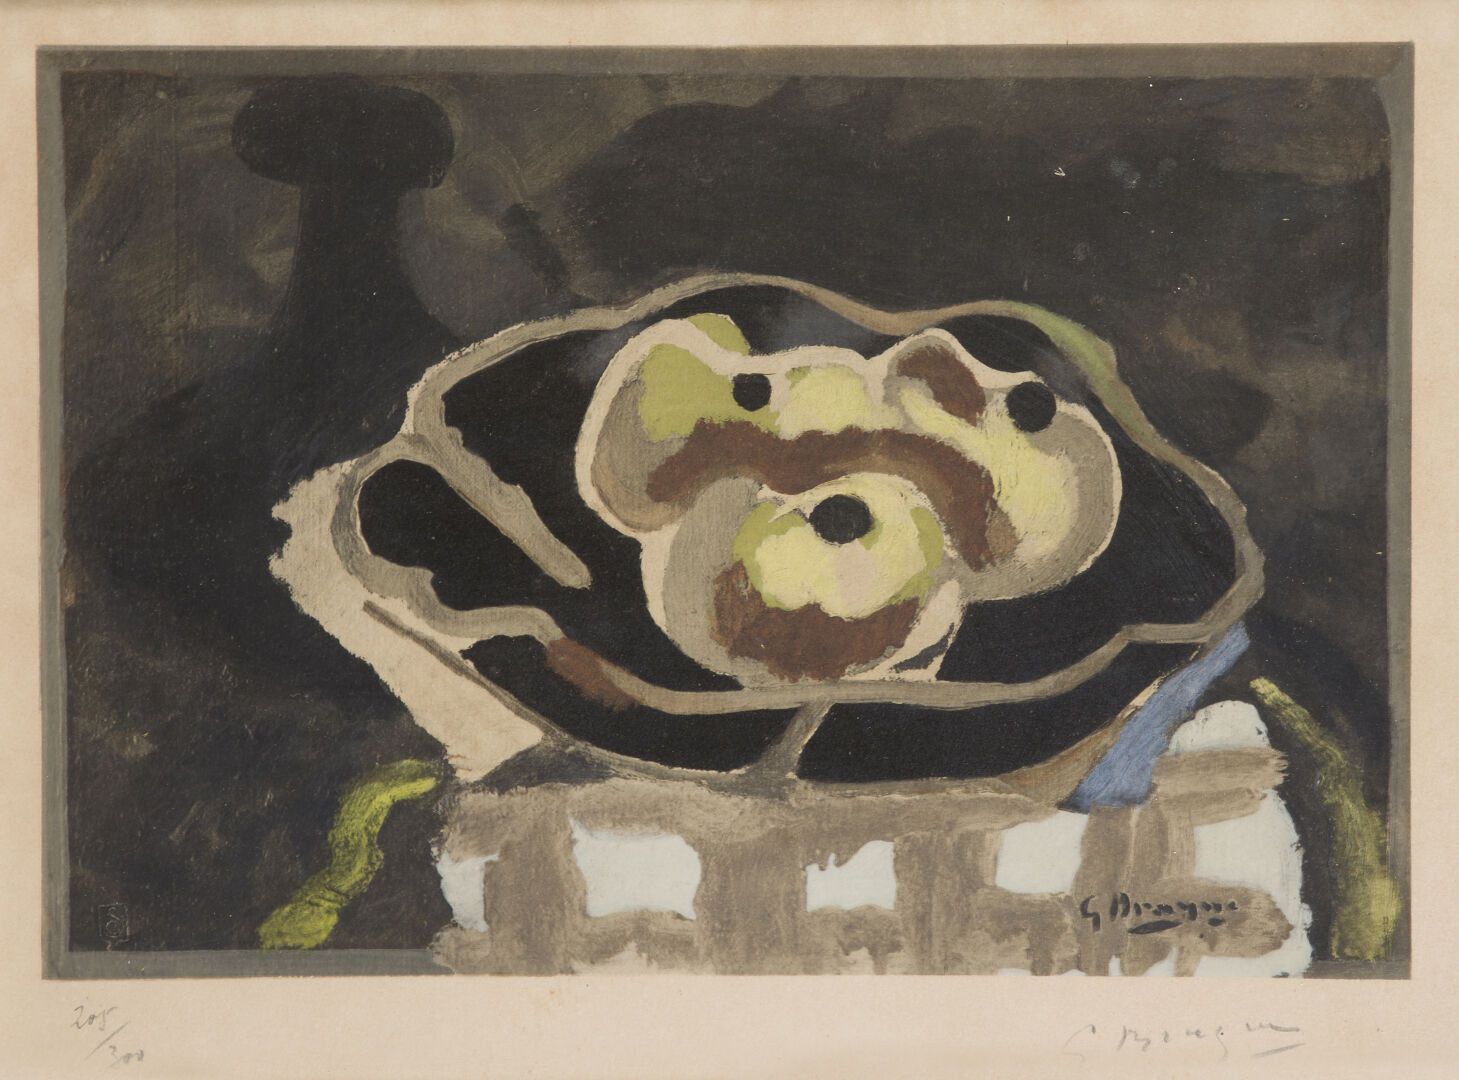 Null 乔治-布拉克（1882-1963）。
静物与苹果。
彩色石版画，边缘有签名和编号205/300。
尺寸：28x38厘米。